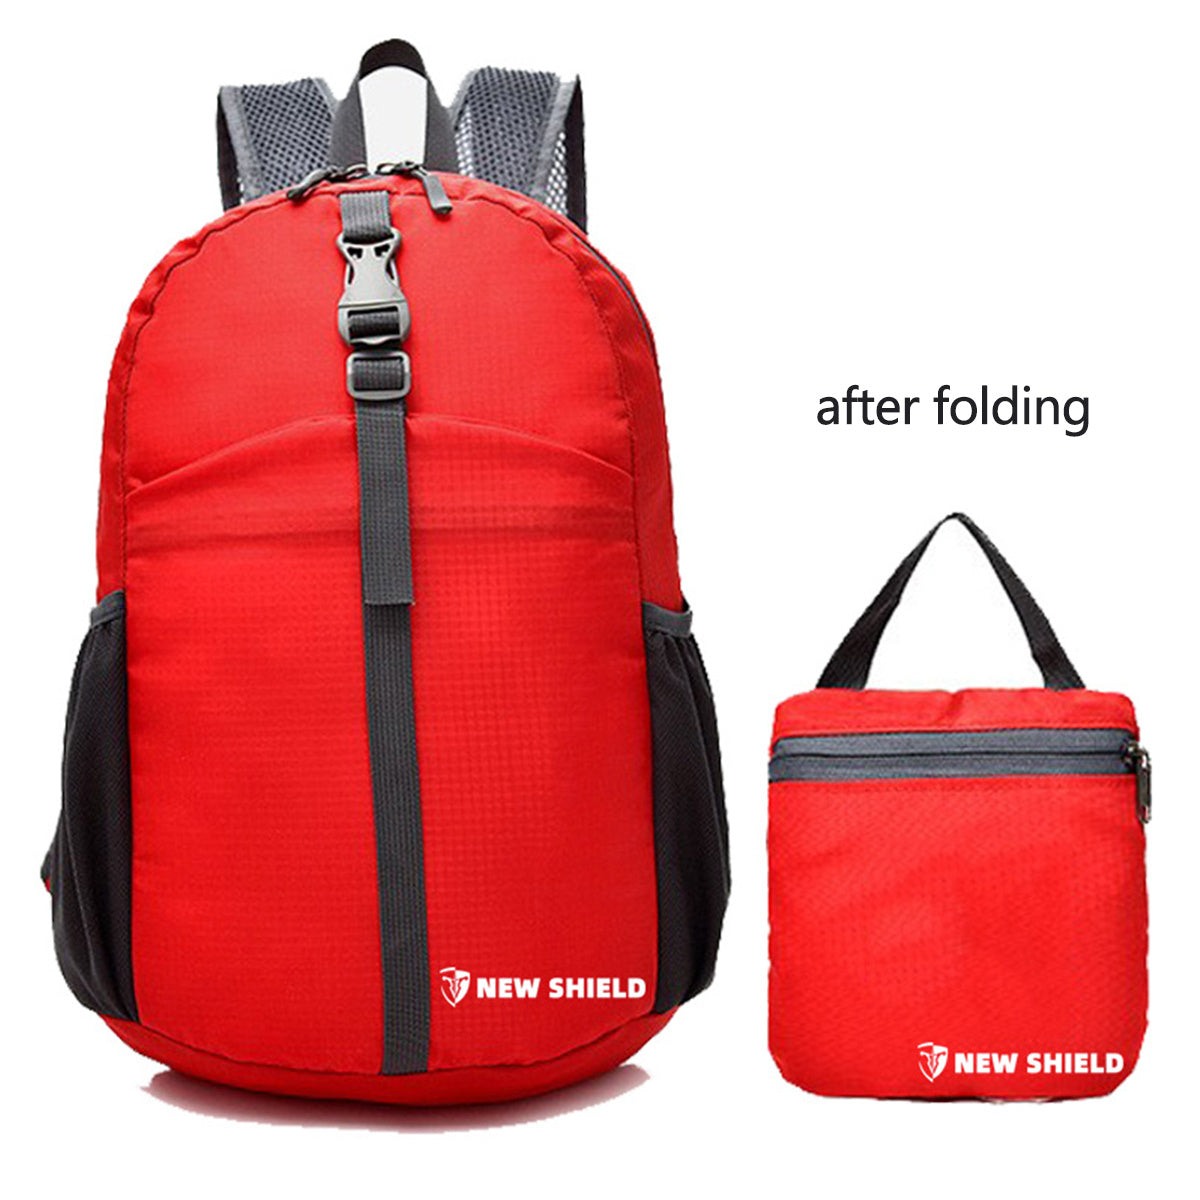 Folding Ultralight Portable Backpack For Traveling